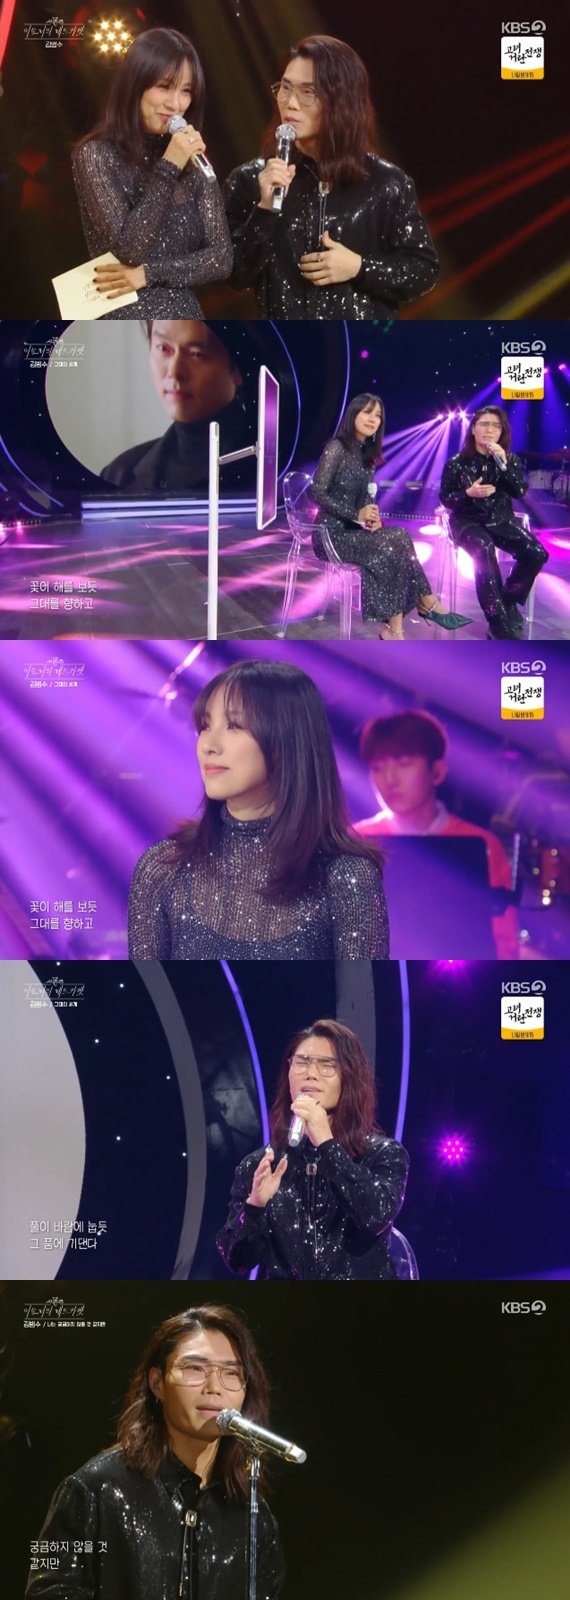 KBS 2TV '더 시즌즈-이효리의 레드카펫'